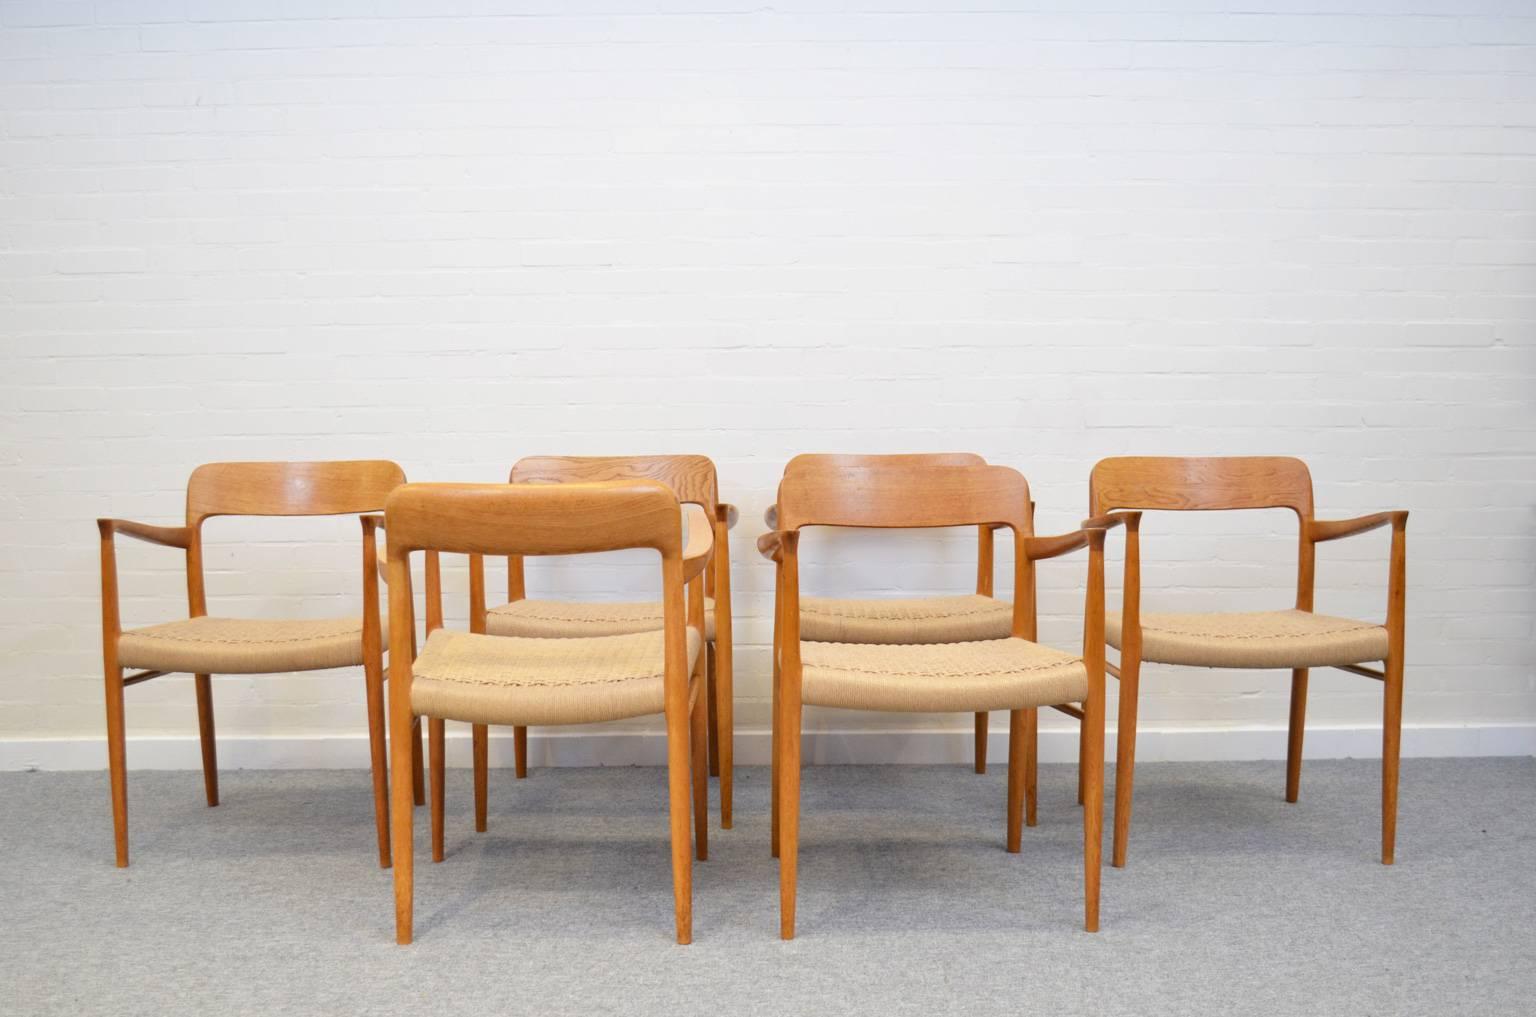 Scandinavian Modern Dining Chairs Model 56 by Niels Otto Møller for J.L. Møller Møbelfabrik, Denmark